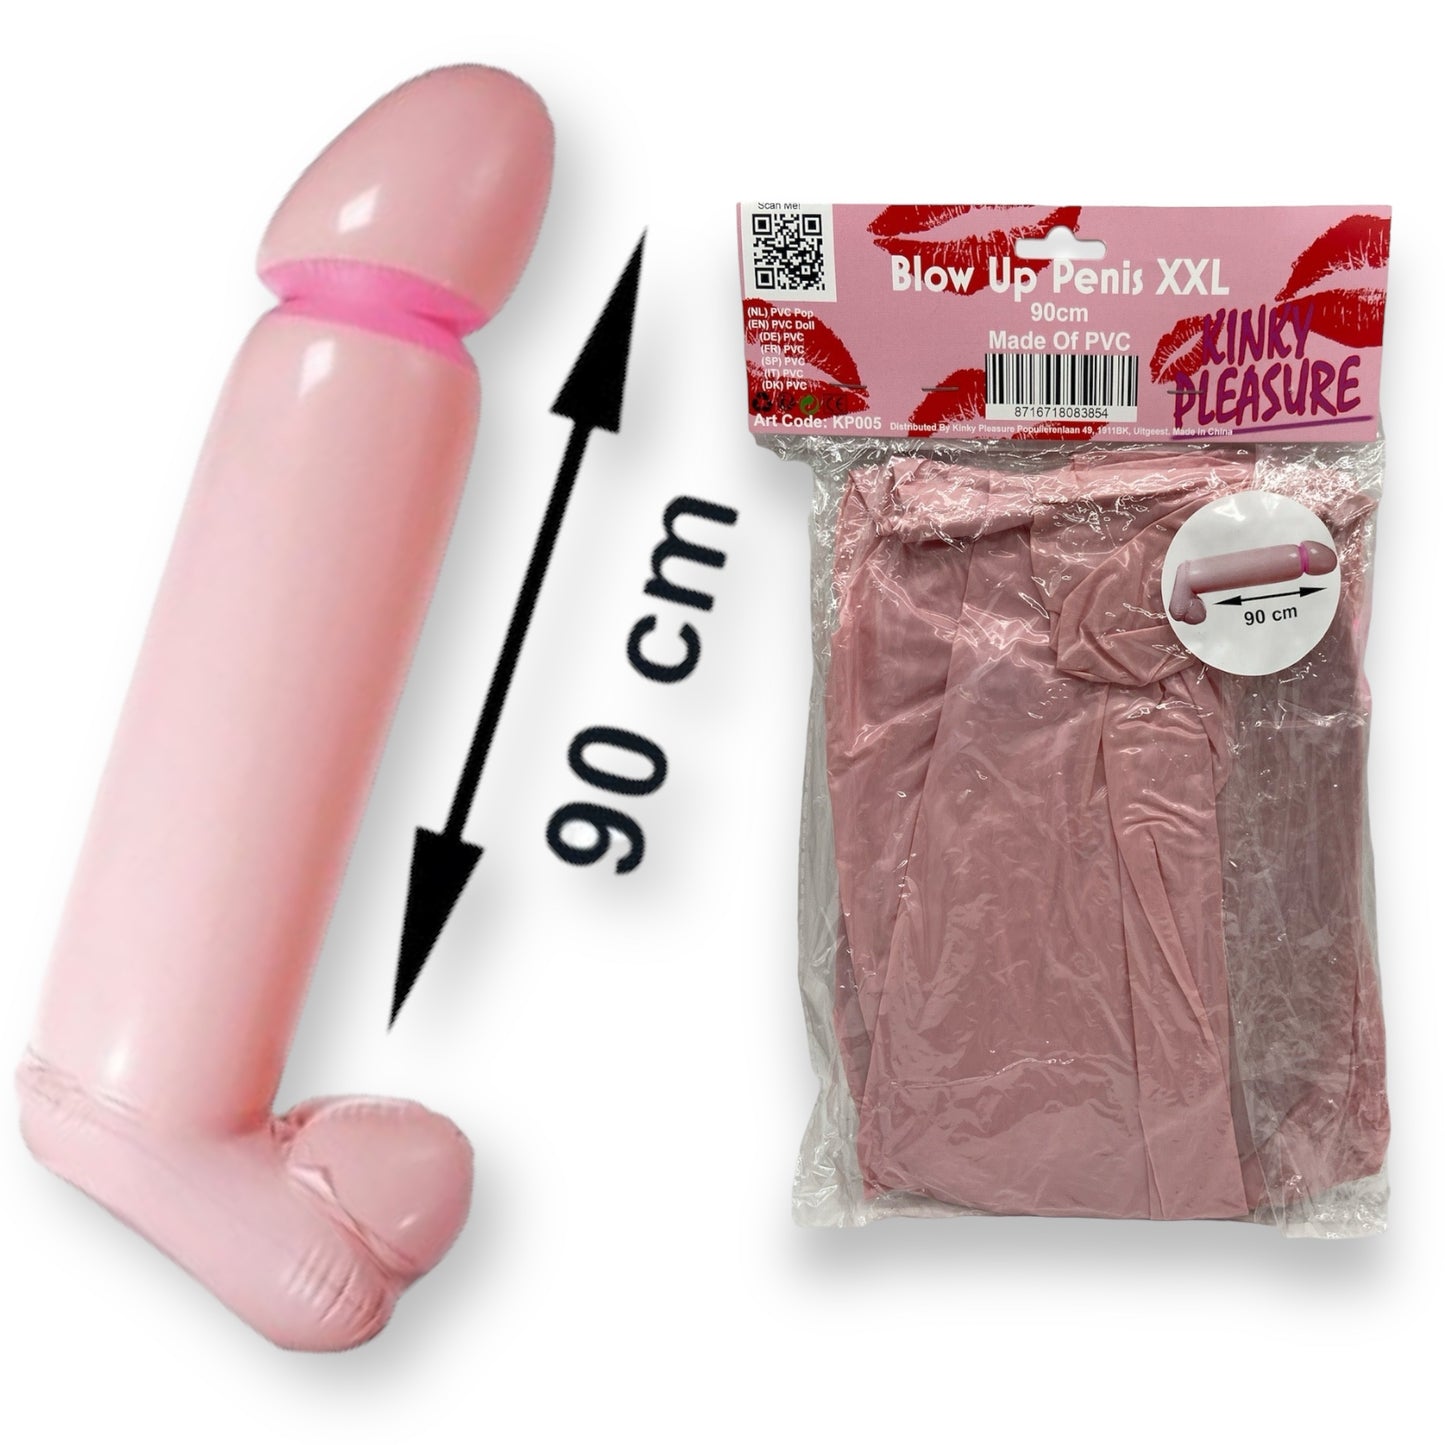 Kinky Pleasure - KP005 -Inflatable Mega Penis XXL - 90cm - 1 Piece